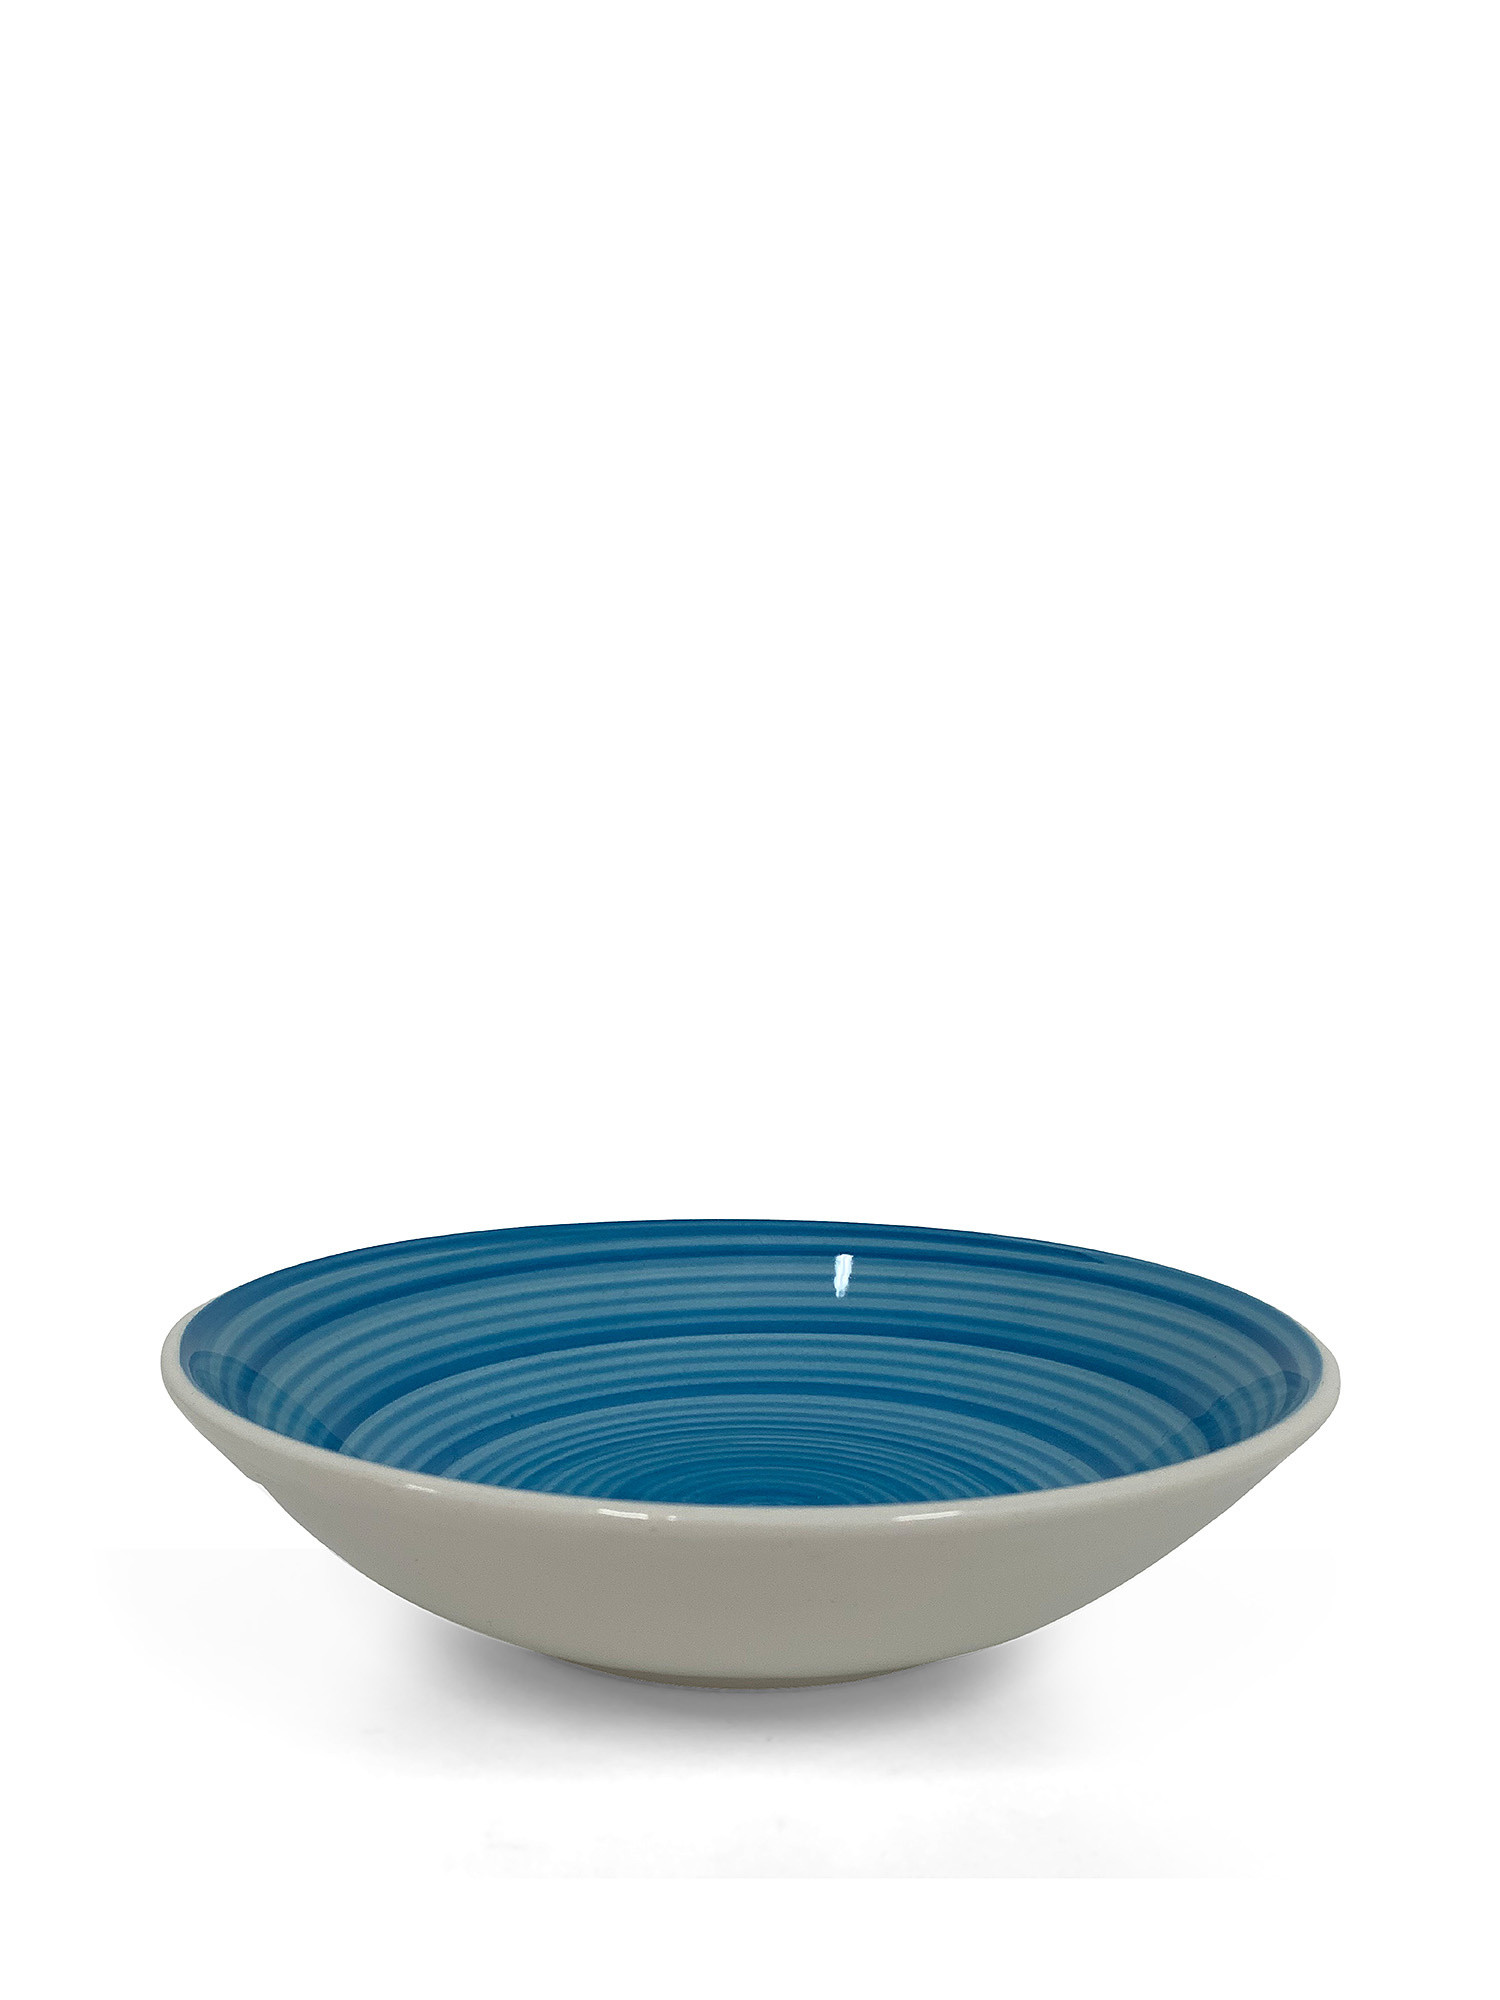 Piatto fondo ceramica dipinta a mano Spirale, Azzurro, large image number 0